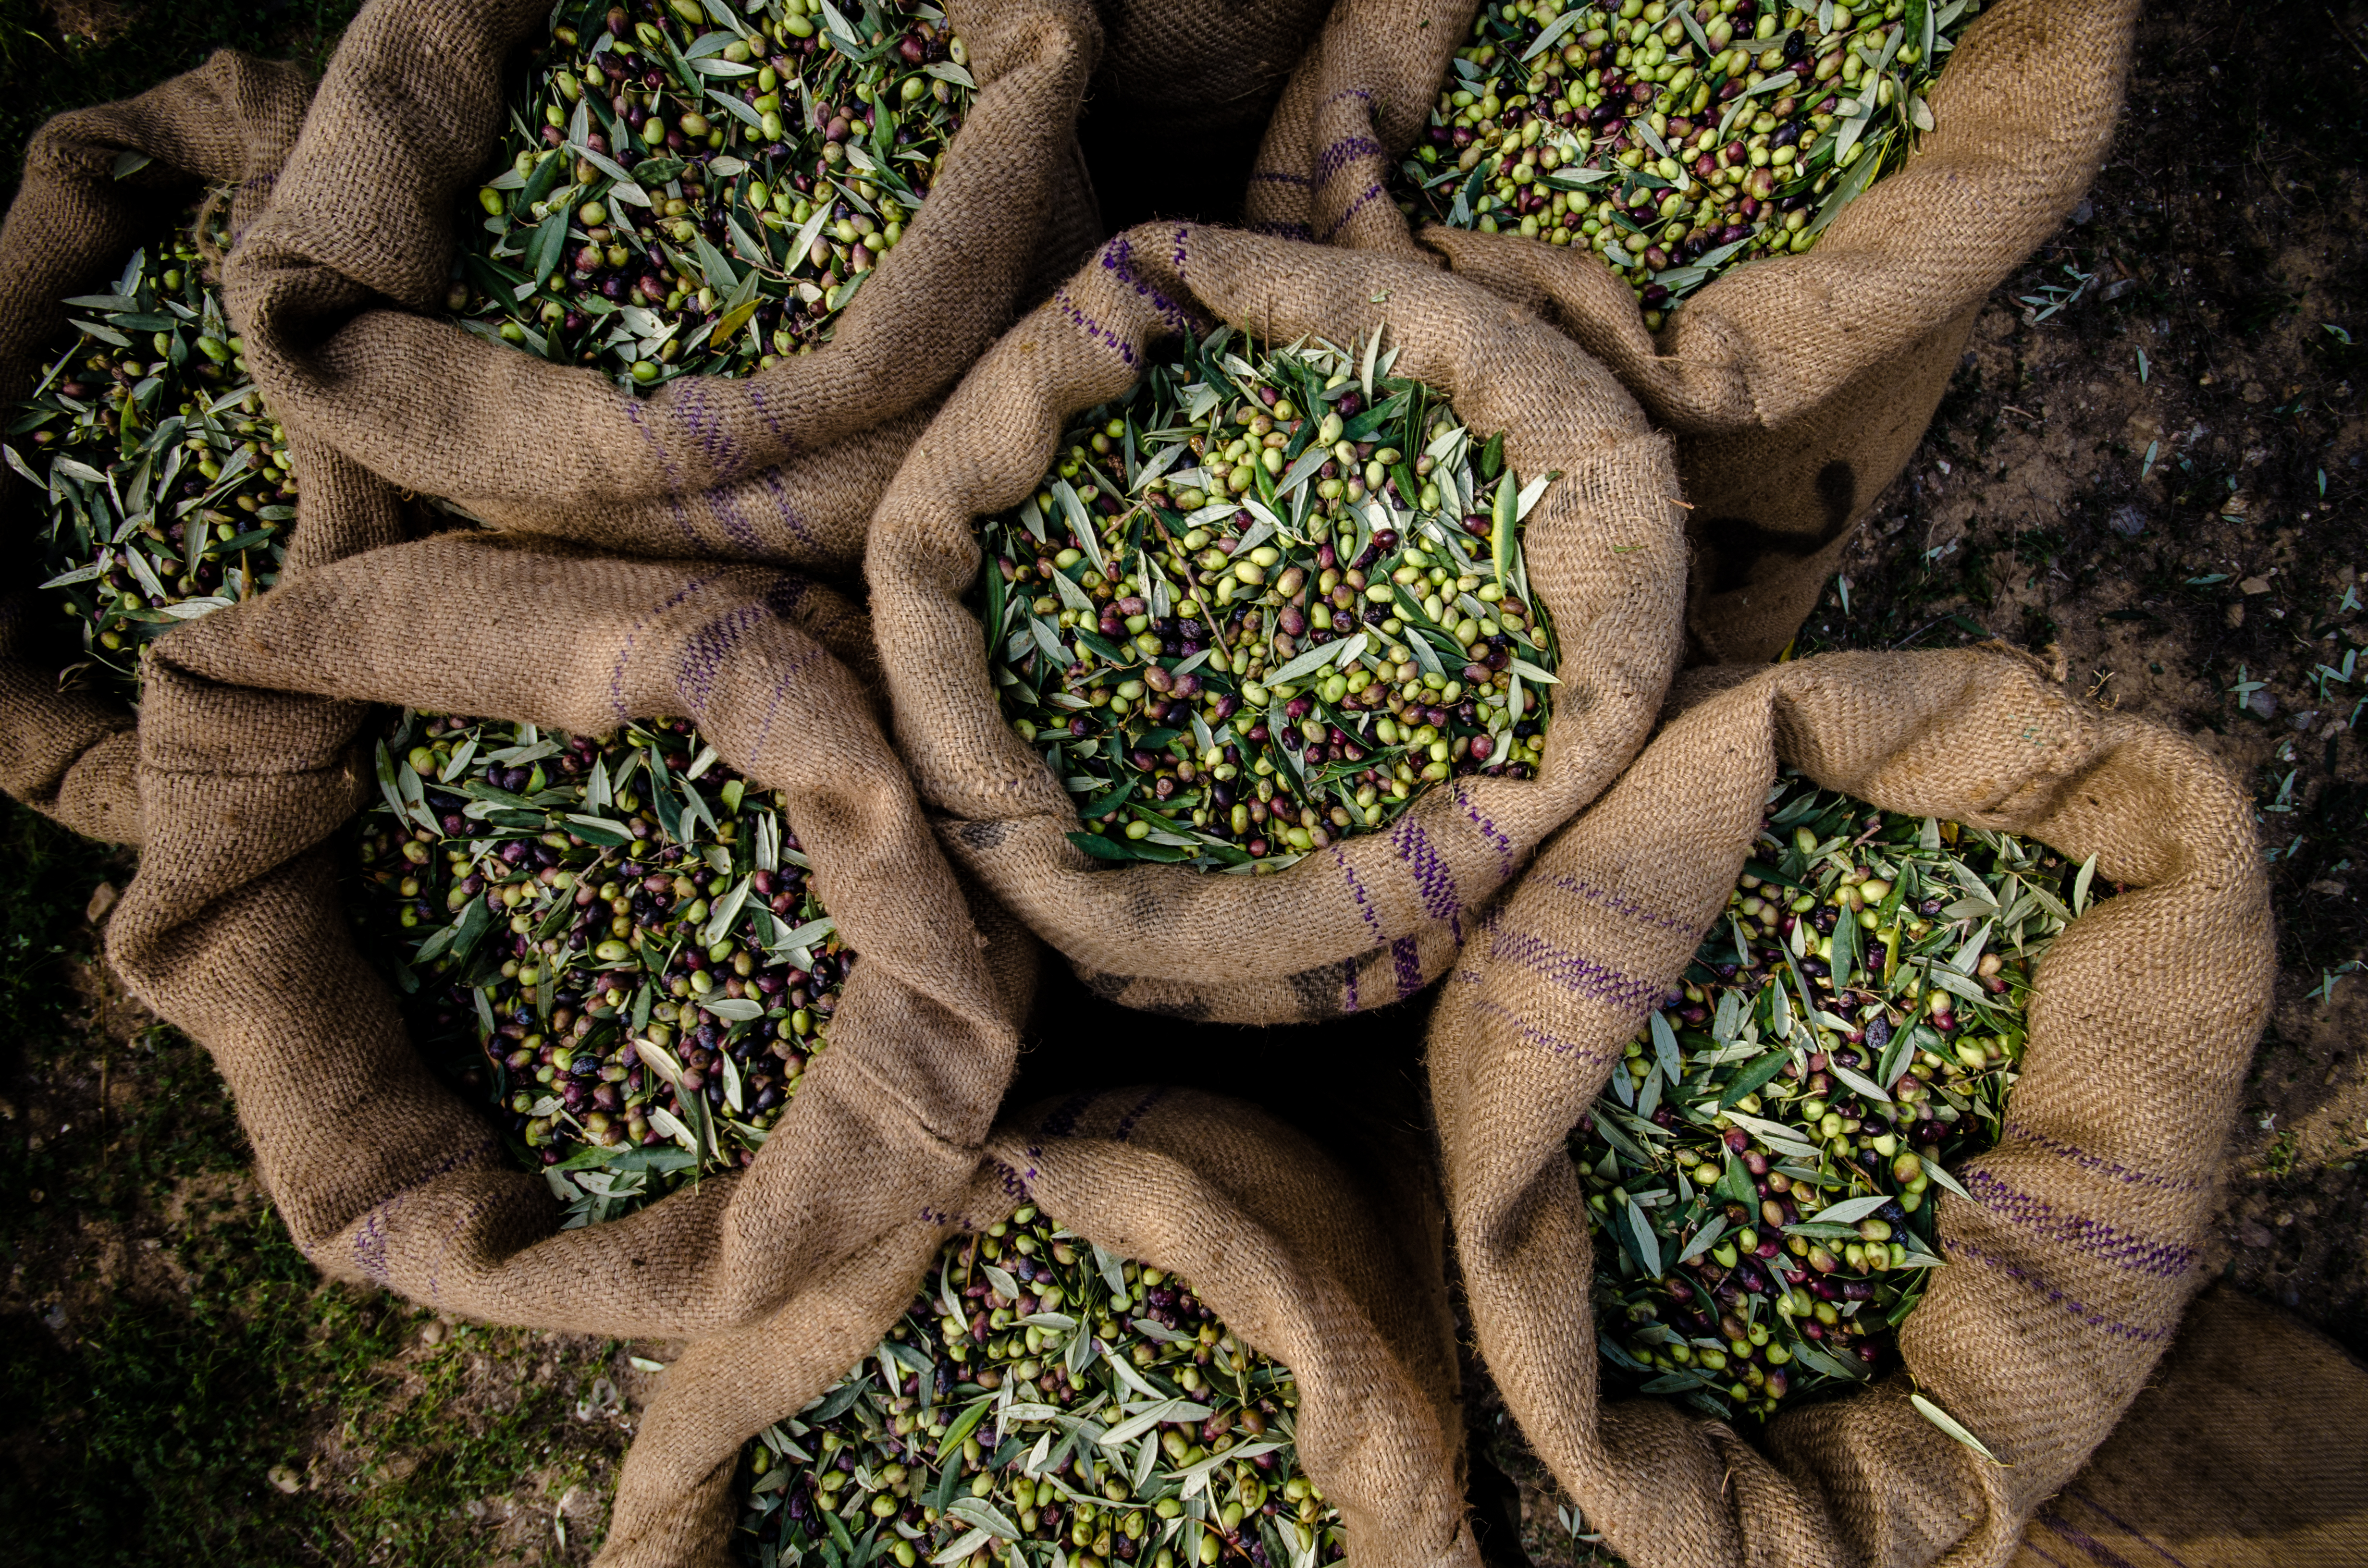 Raccolta delle olive: come e quando farla